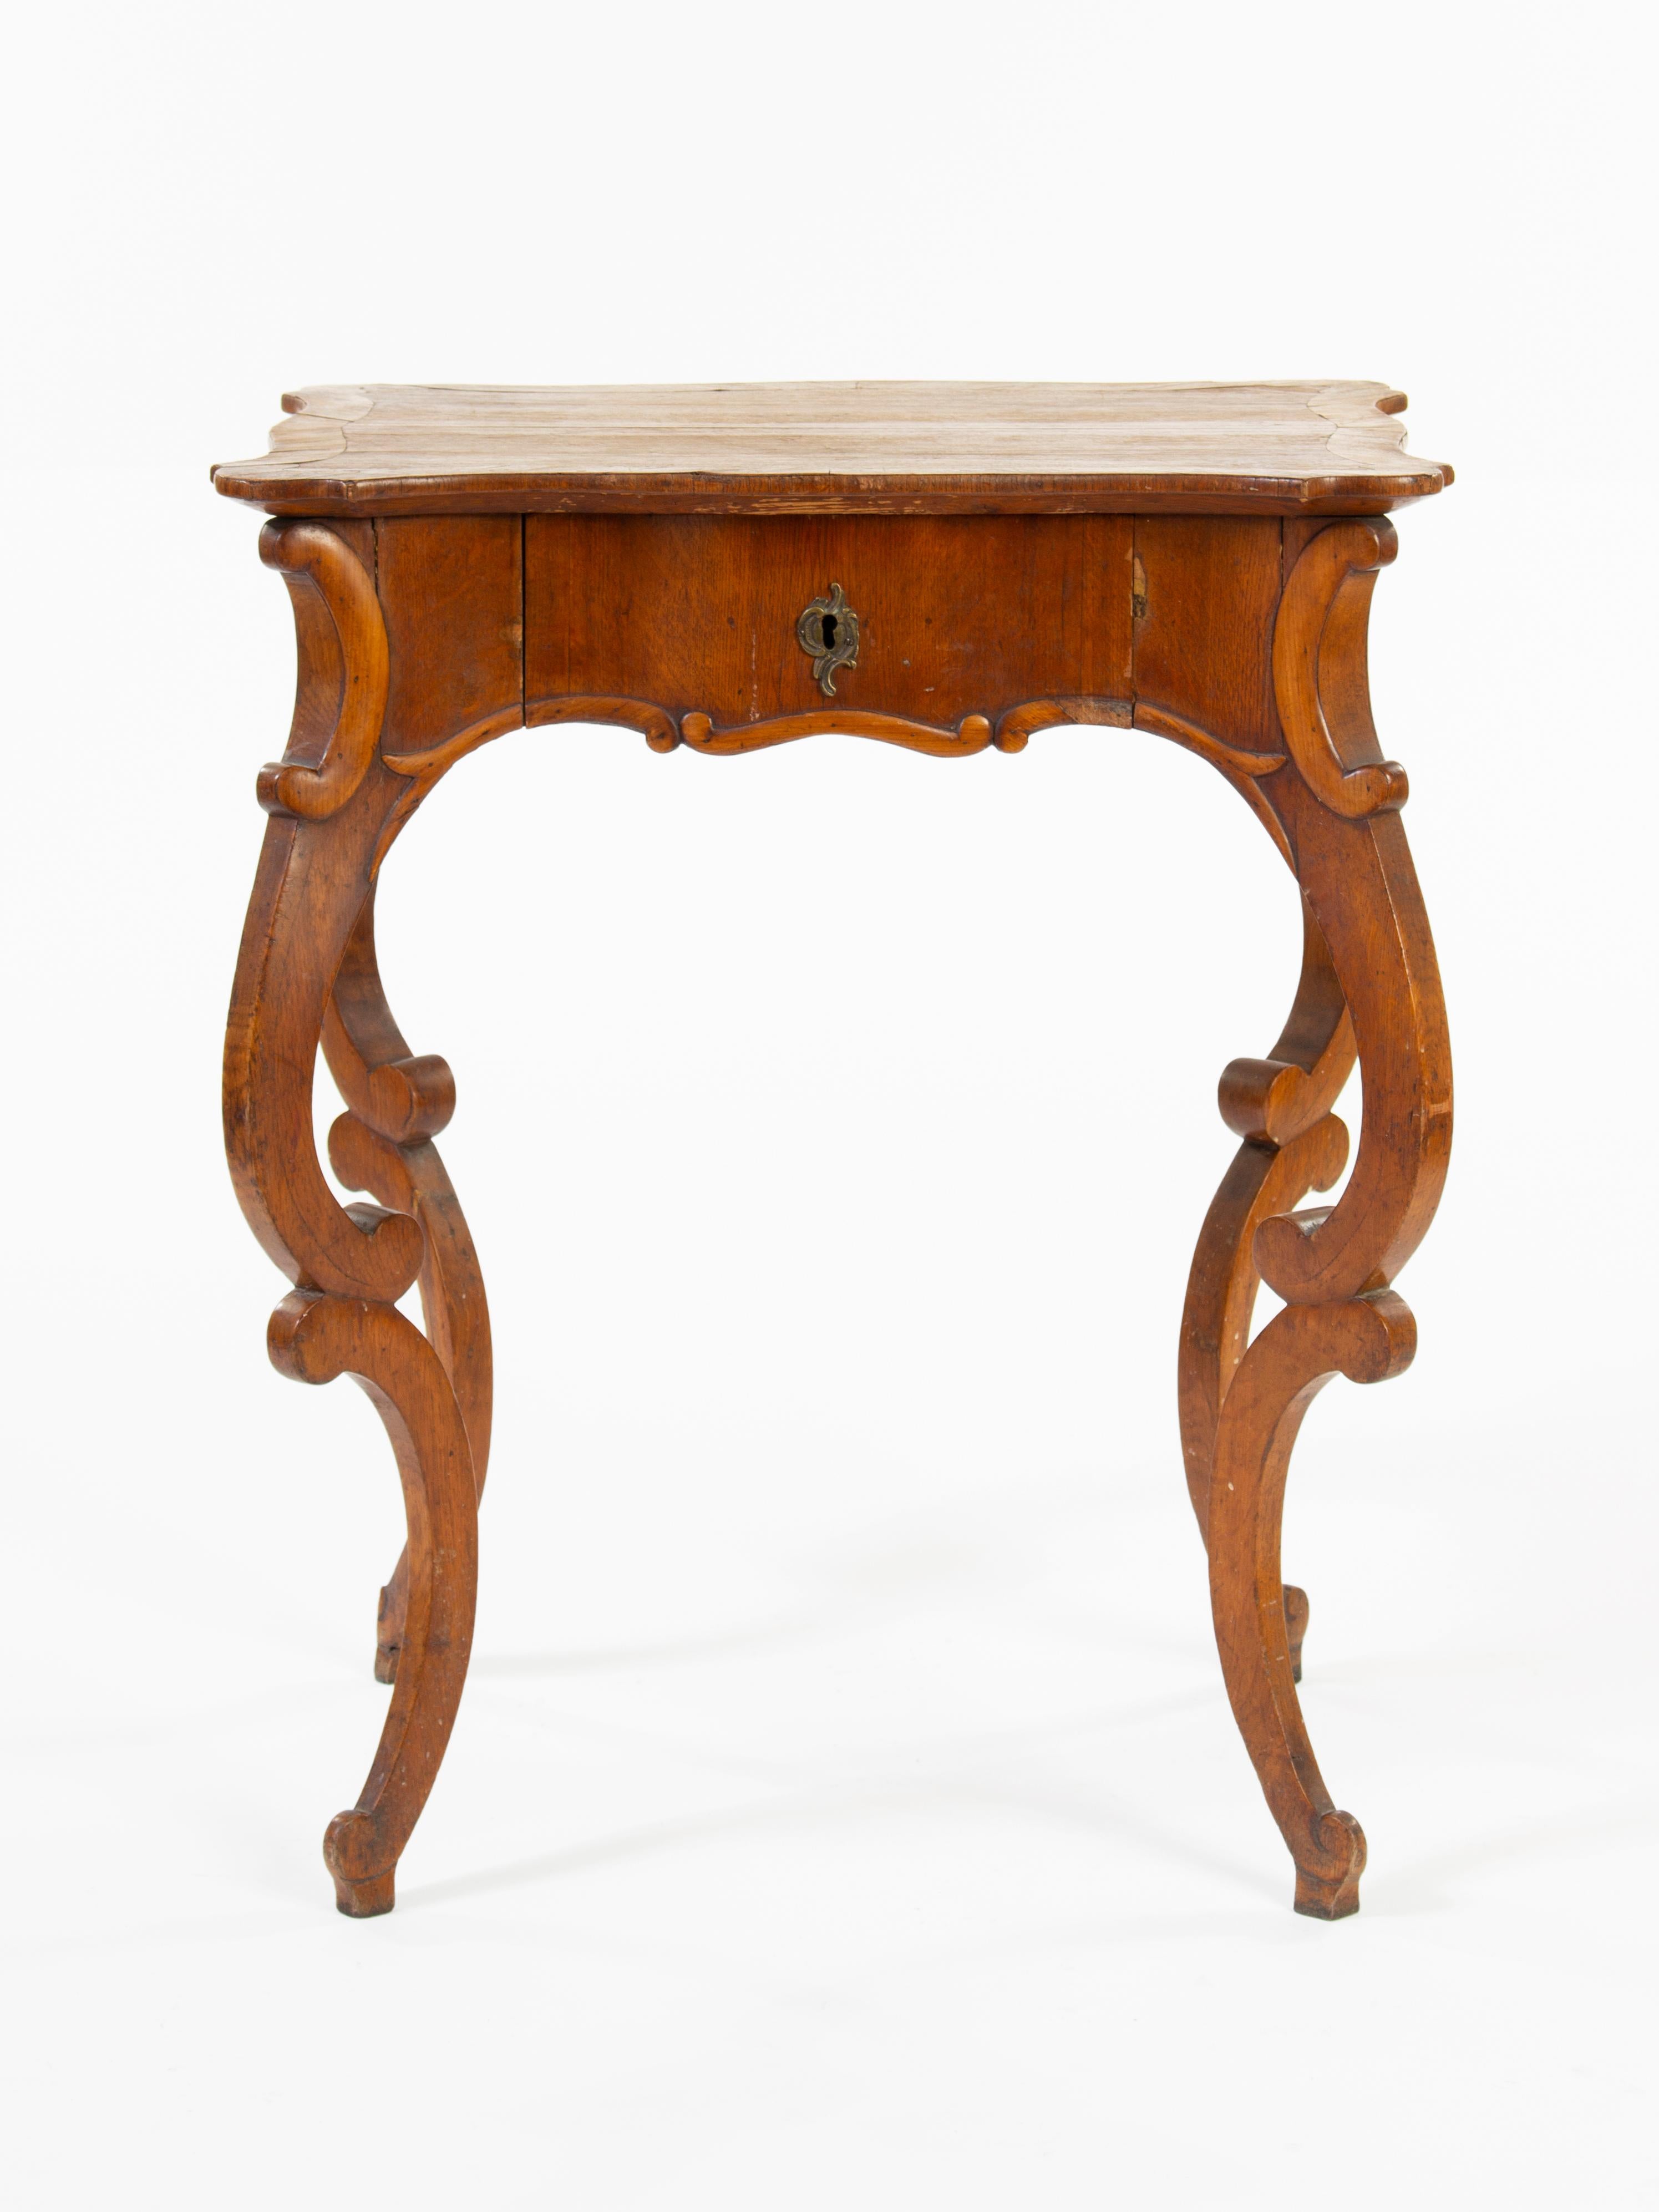 Der Louis-Philippe-Rokokotisch ist ein elegantes und anspruchsvolles Möbelstück, das in der Regel aus Mahagoni oder anderen edlen Hölzern gefertigt wird. Diese Tische zeichnen sich in der Regel durch geprägte oder geschnitzte Details sowie durch